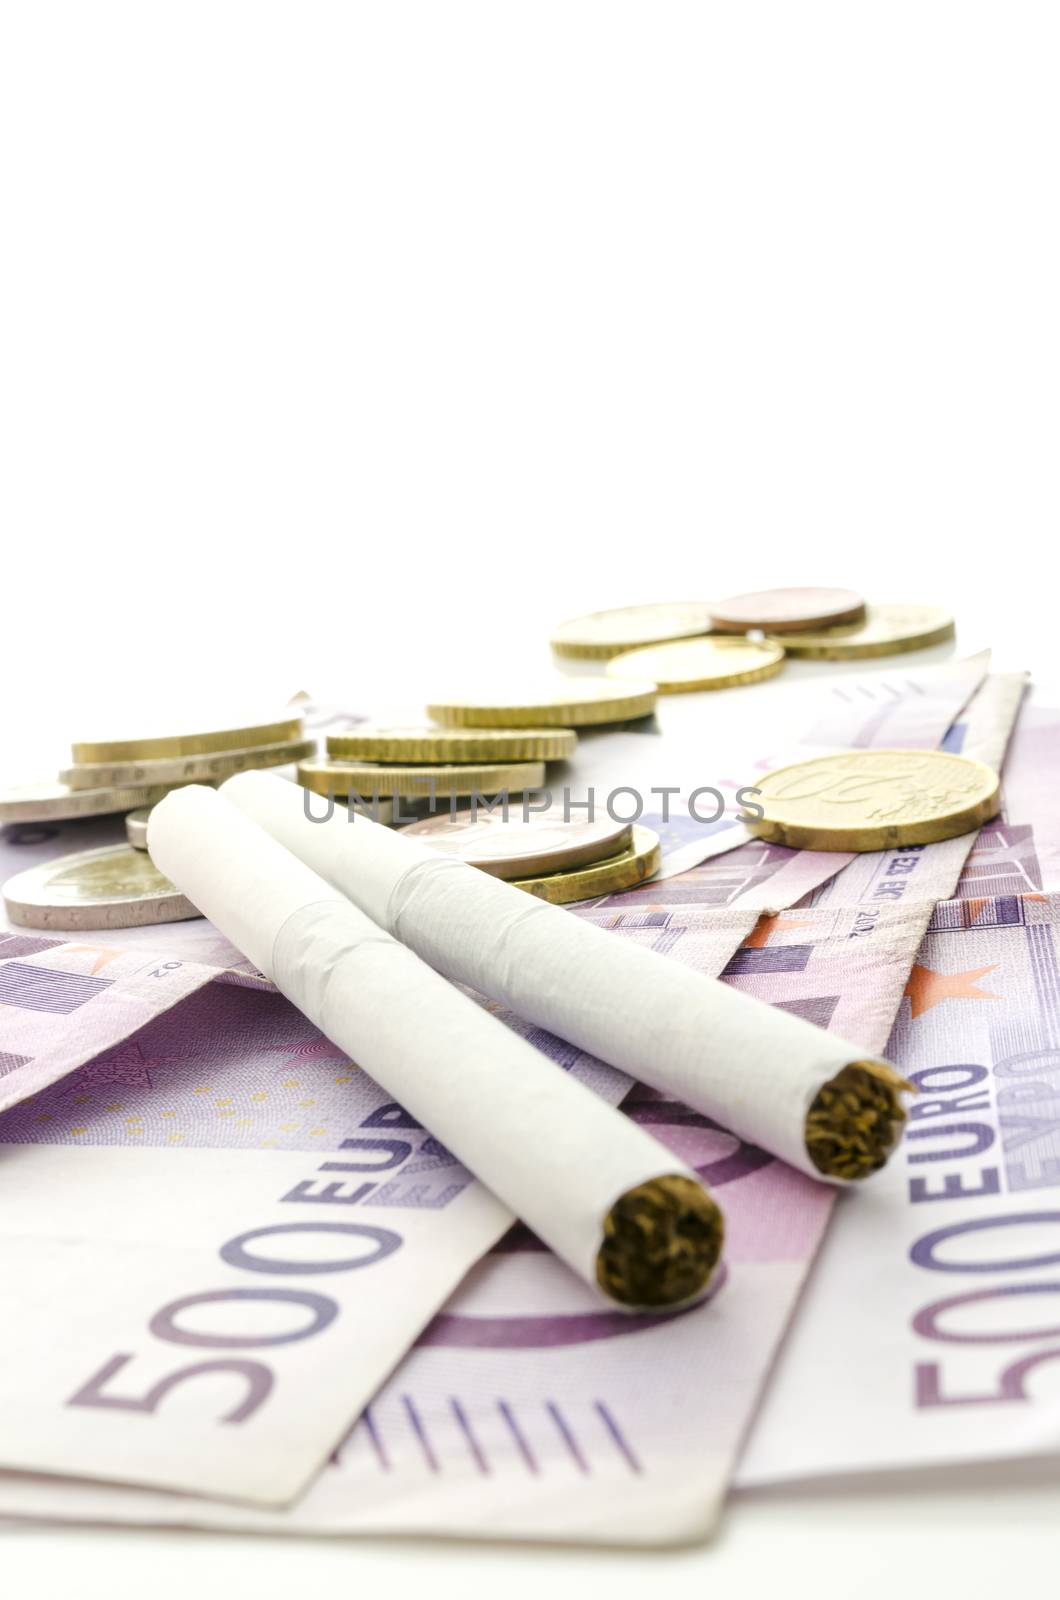 Smoking - expensive habit by Gajus